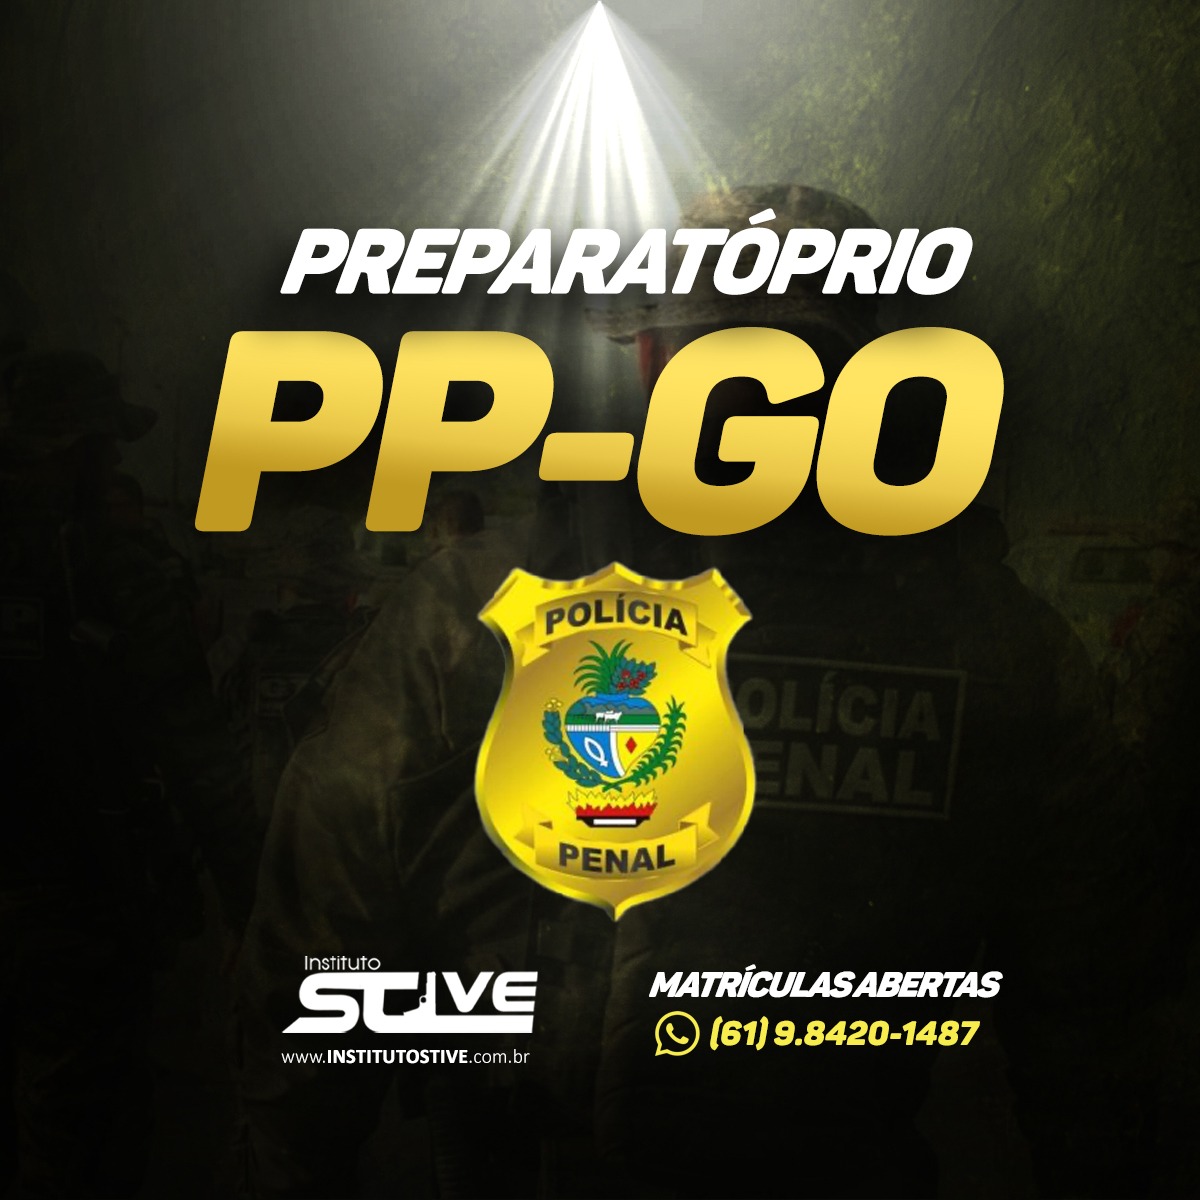 PREPARATRIO PRESENCIAL PP-GO